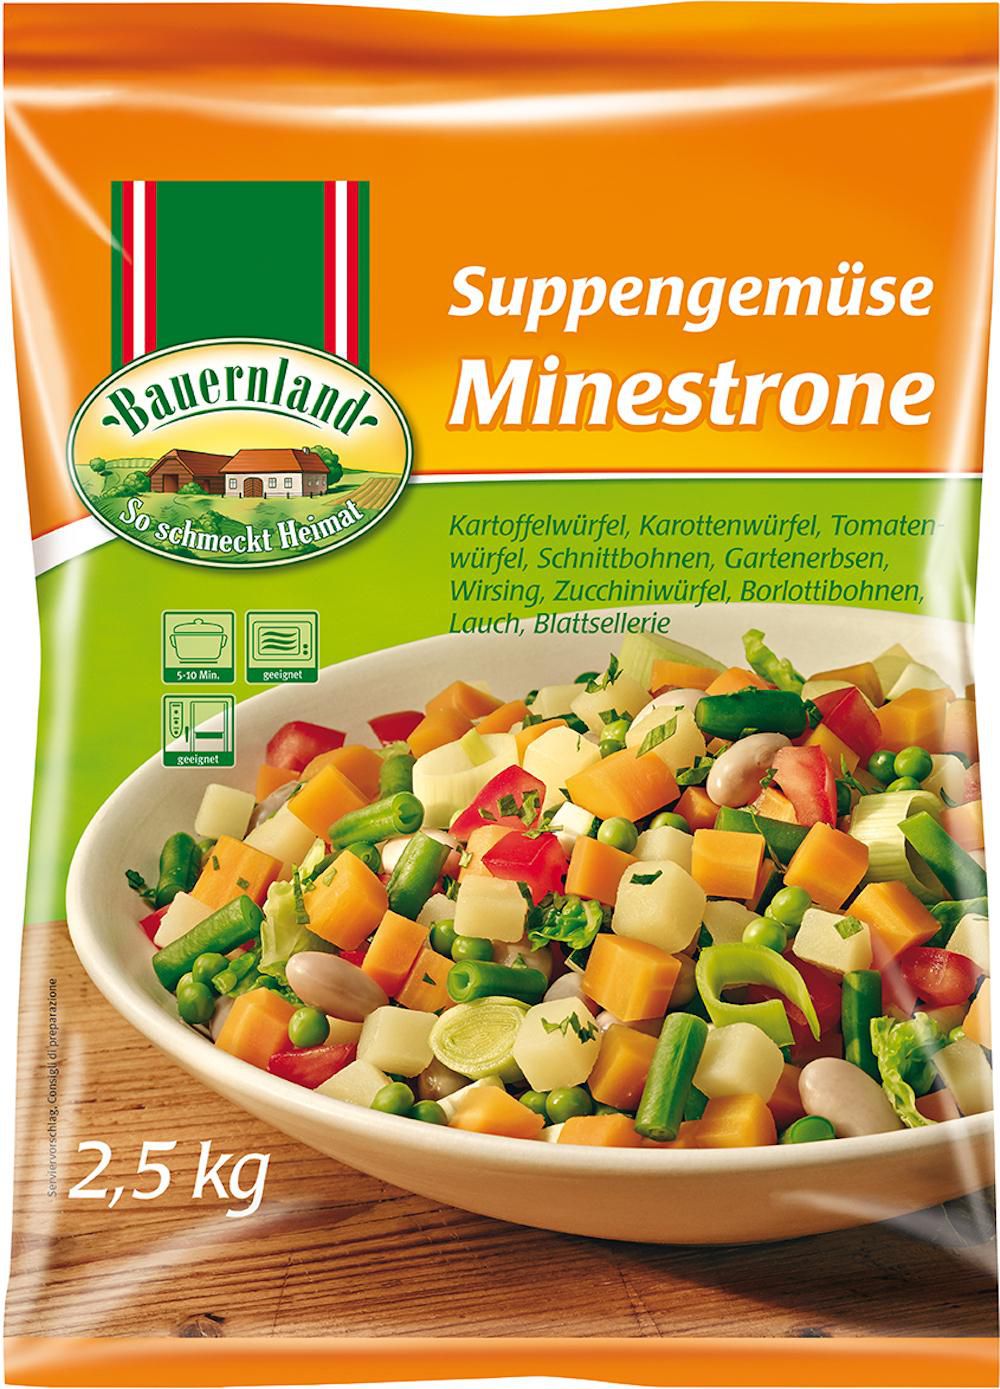 Suppengemüse / Minestrone 4 x 2,5 kg